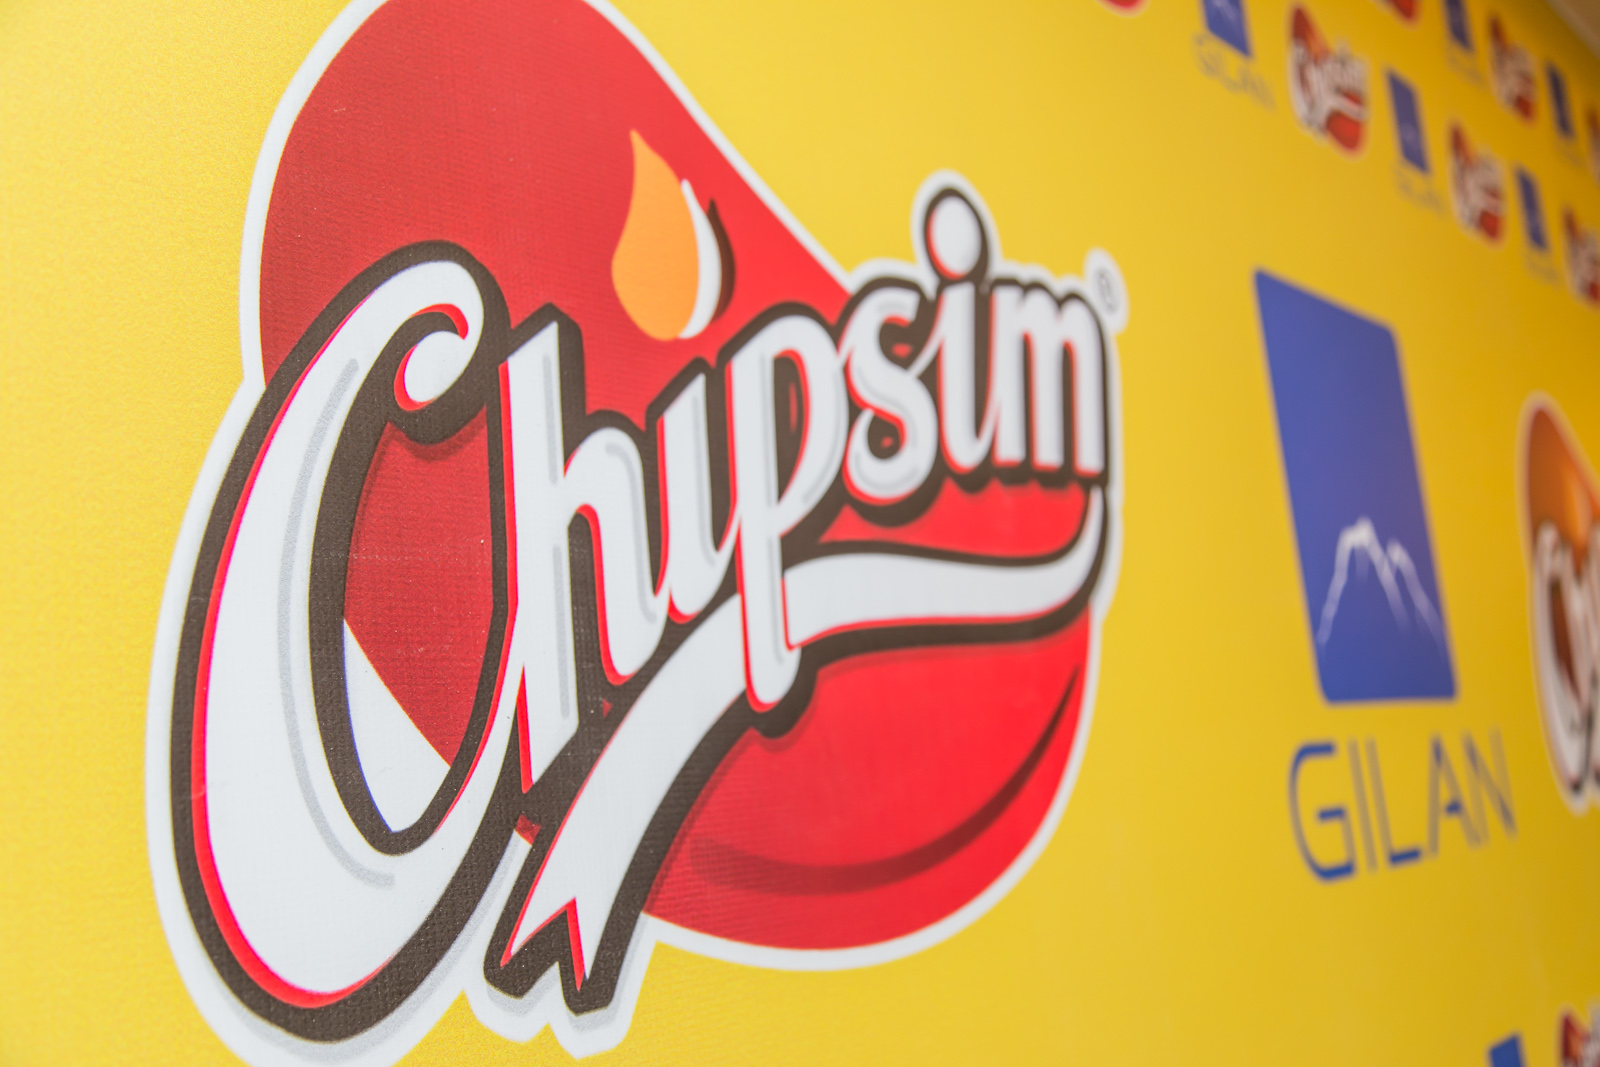 На рынке появился новый бренд – «Chipsim» - ФОТО